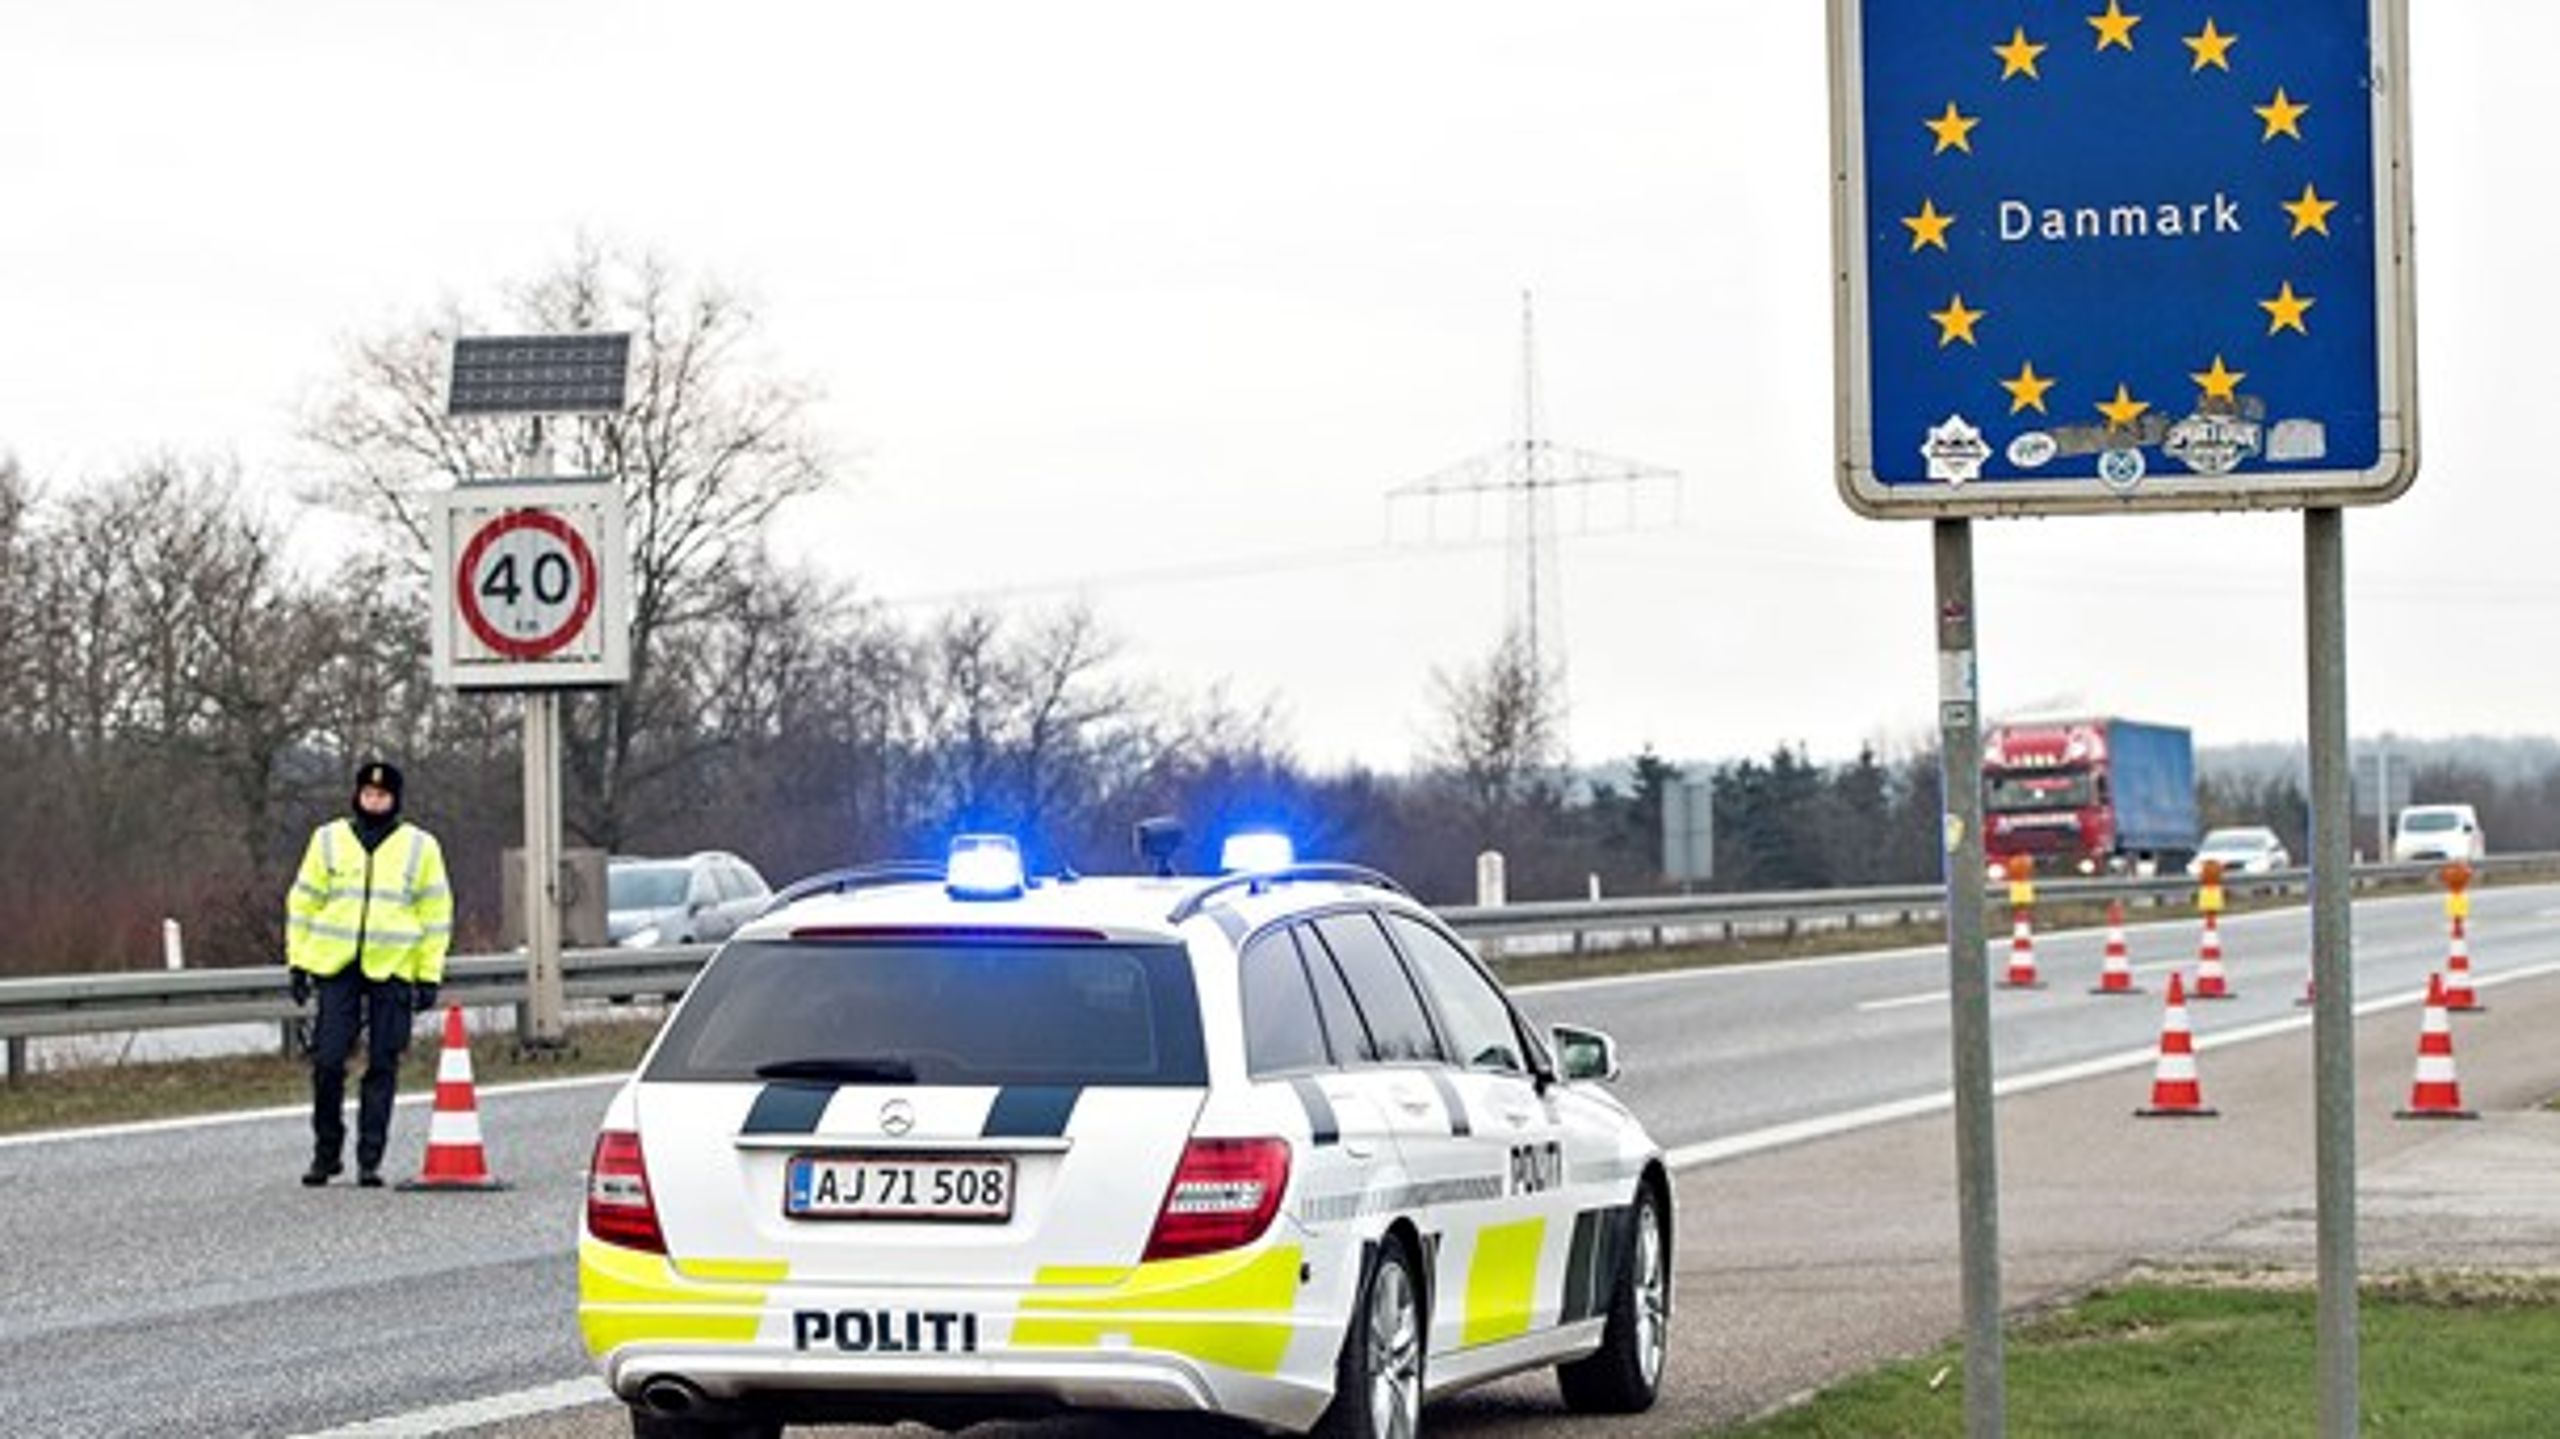 Grænsekontrollen ved den dansk-tyske grænse var et midlertidig svar på krisen i 2015,&nbsp;men den er efterhånden mere symbolpolitik end realpolitik, mener direktør i Tænketanken Europa.&nbsp;